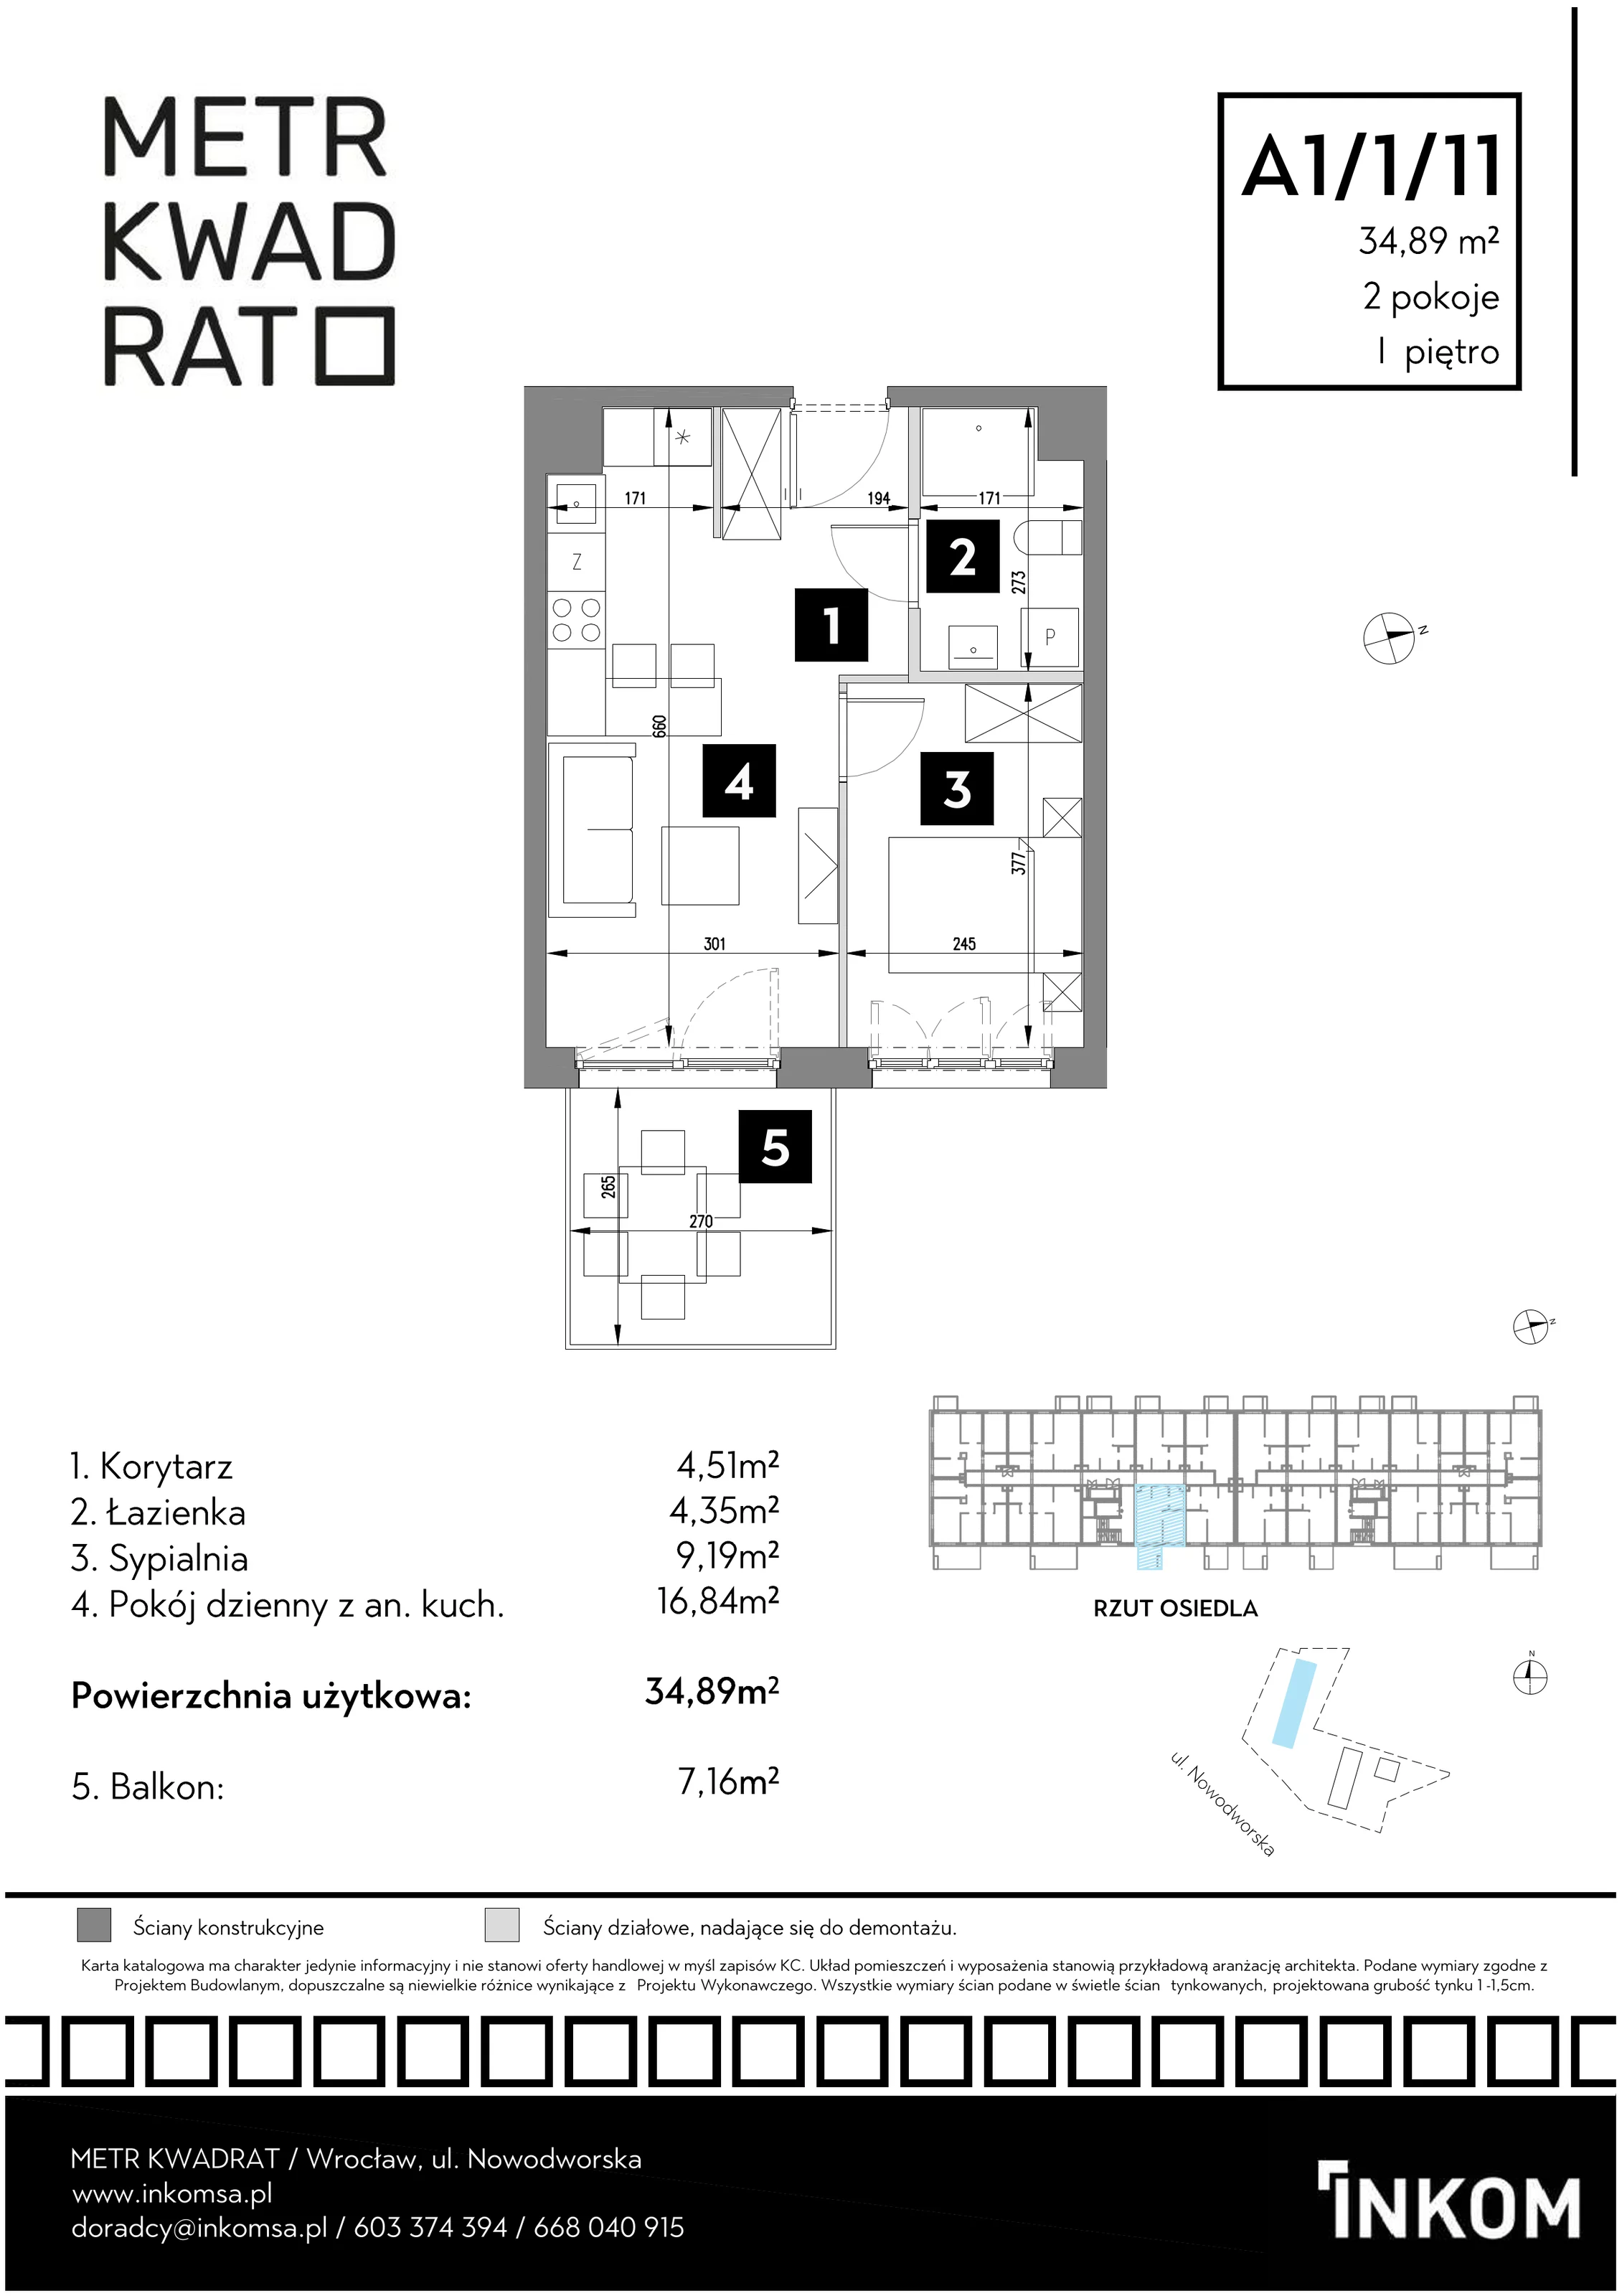 Mieszkanie 34,89 m², piętro 1, oferta nr A1/1/11, Metr Kwadrat, Wrocław, Nowy Dwór, ul. Nowodworska 17B